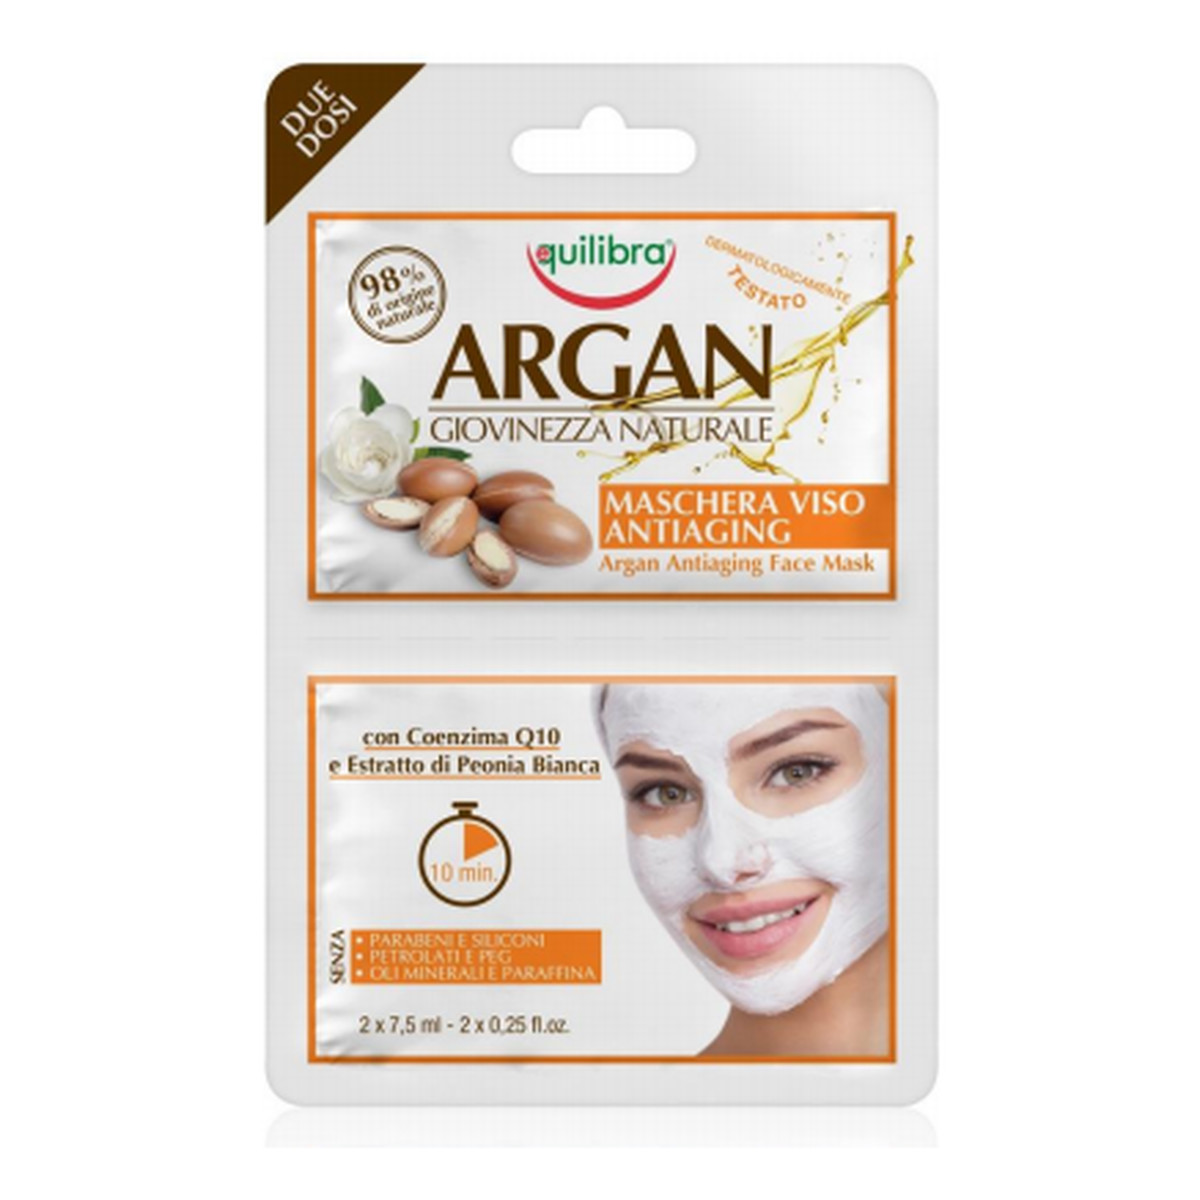 Equilibra Argan arganowa przeciwstarzeniowa maseczka do twarzy 2x7,5ml 15ml